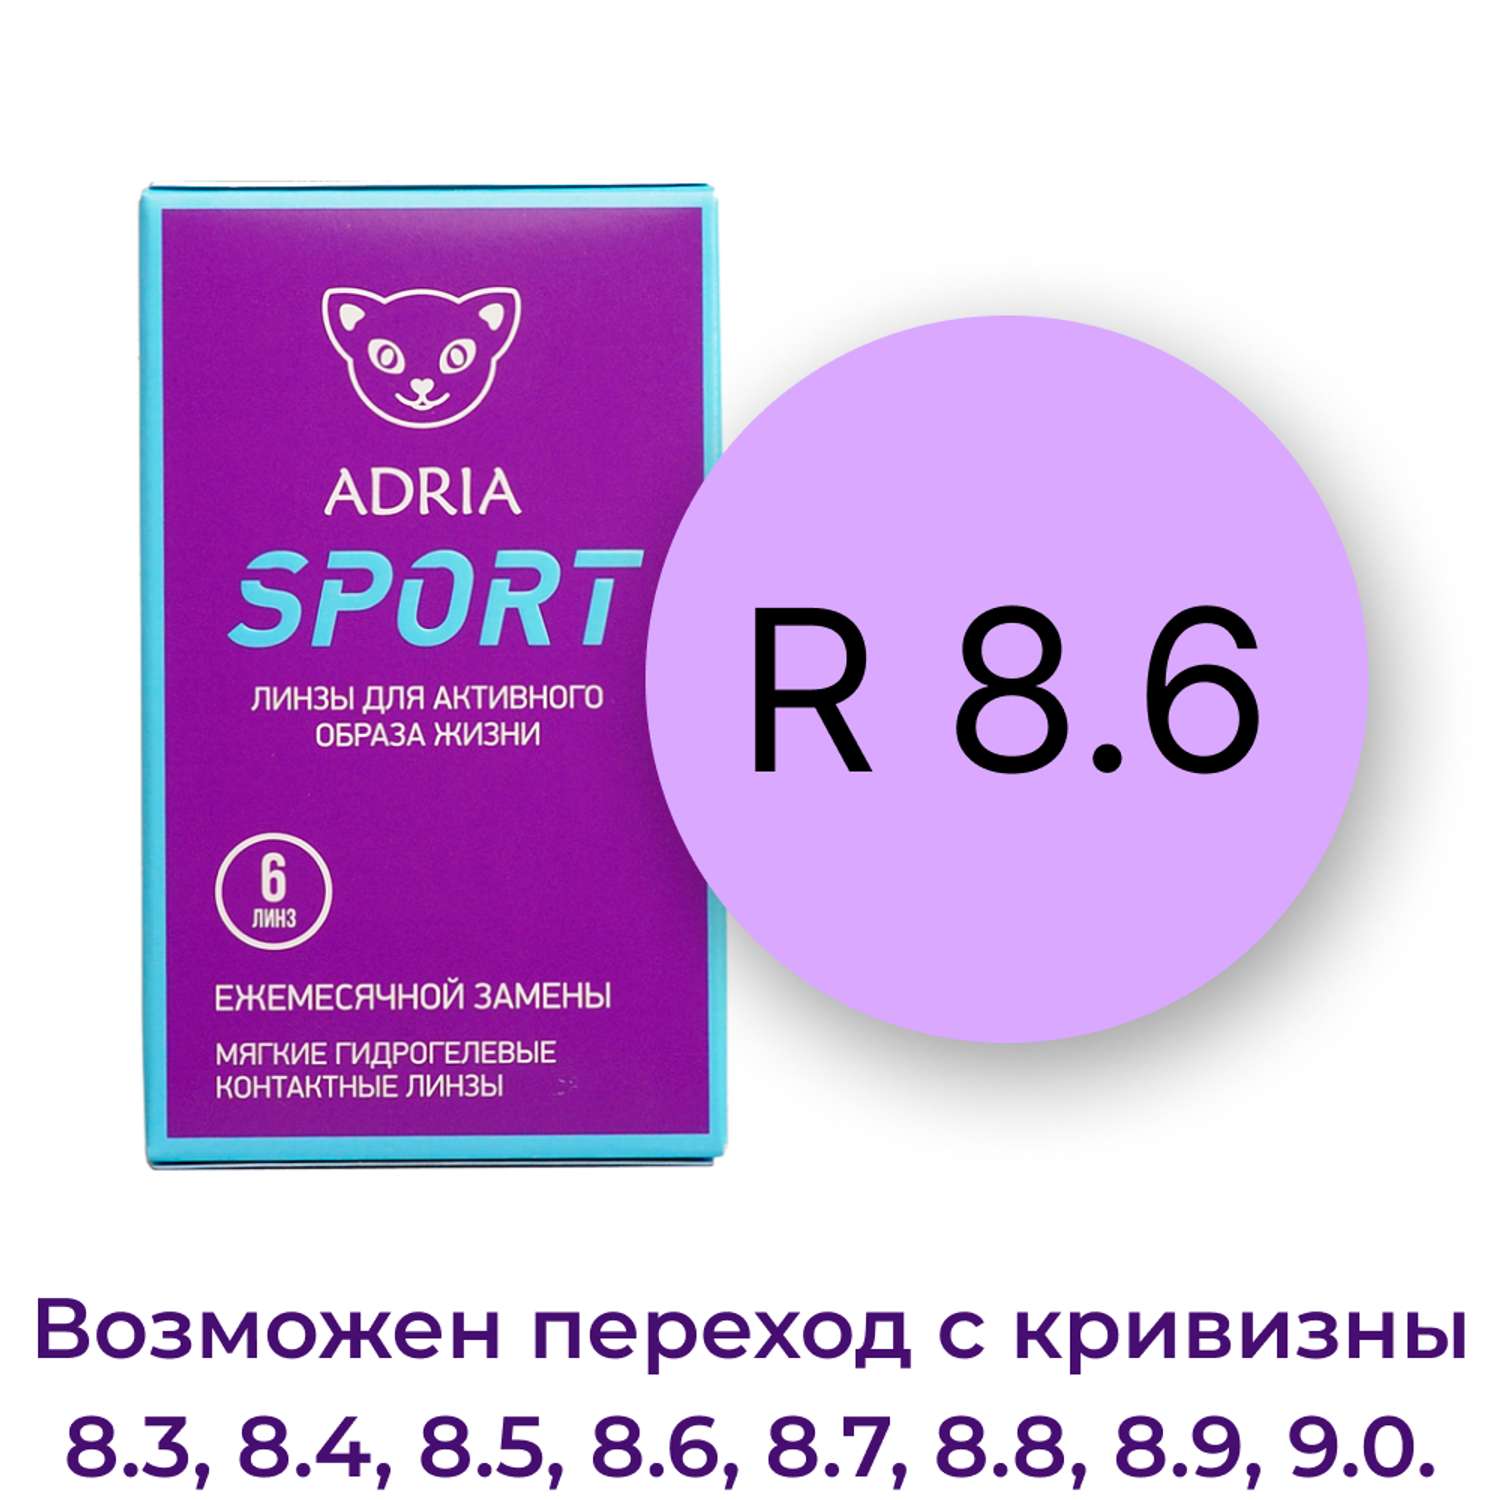 Контактные линзы ADRIA Sport 6 линз R 8.6 -1.75 - фото 3